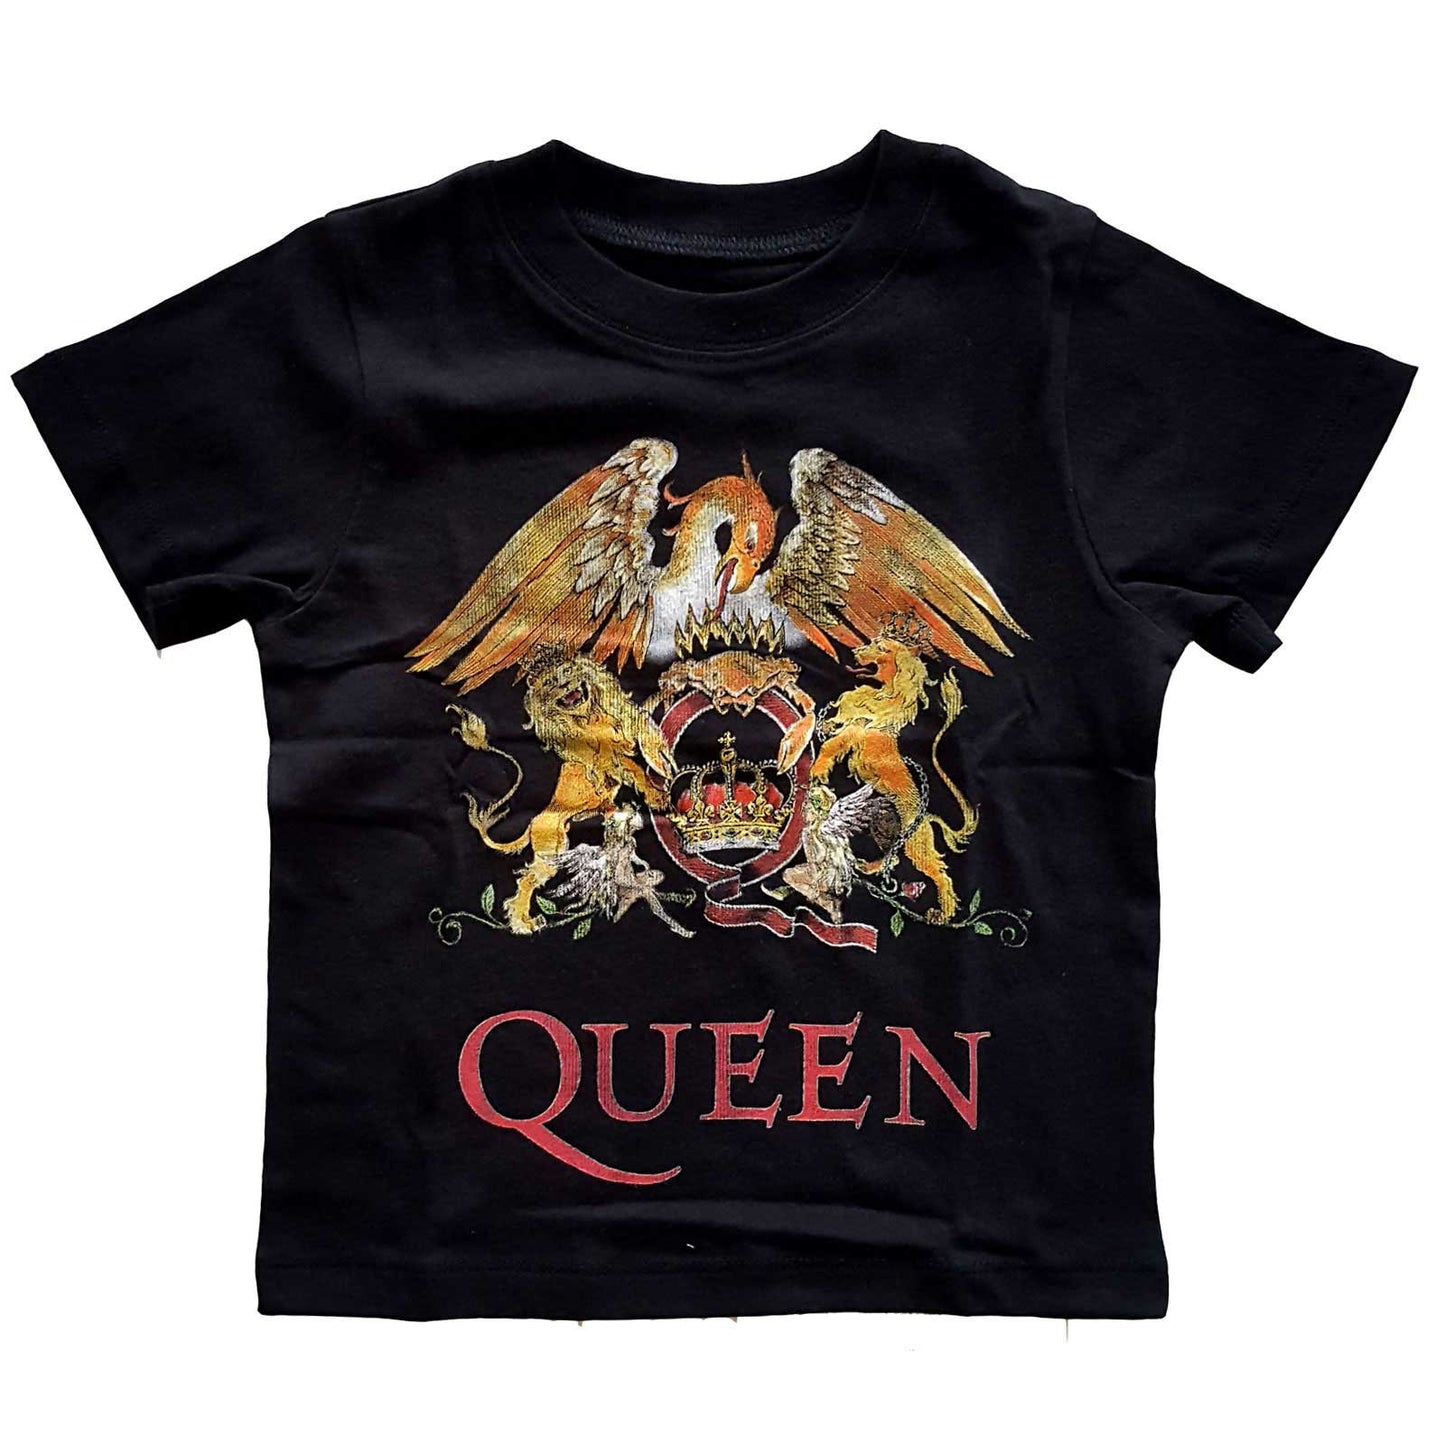 Queen Toddler T-Shirt: Classic Crest